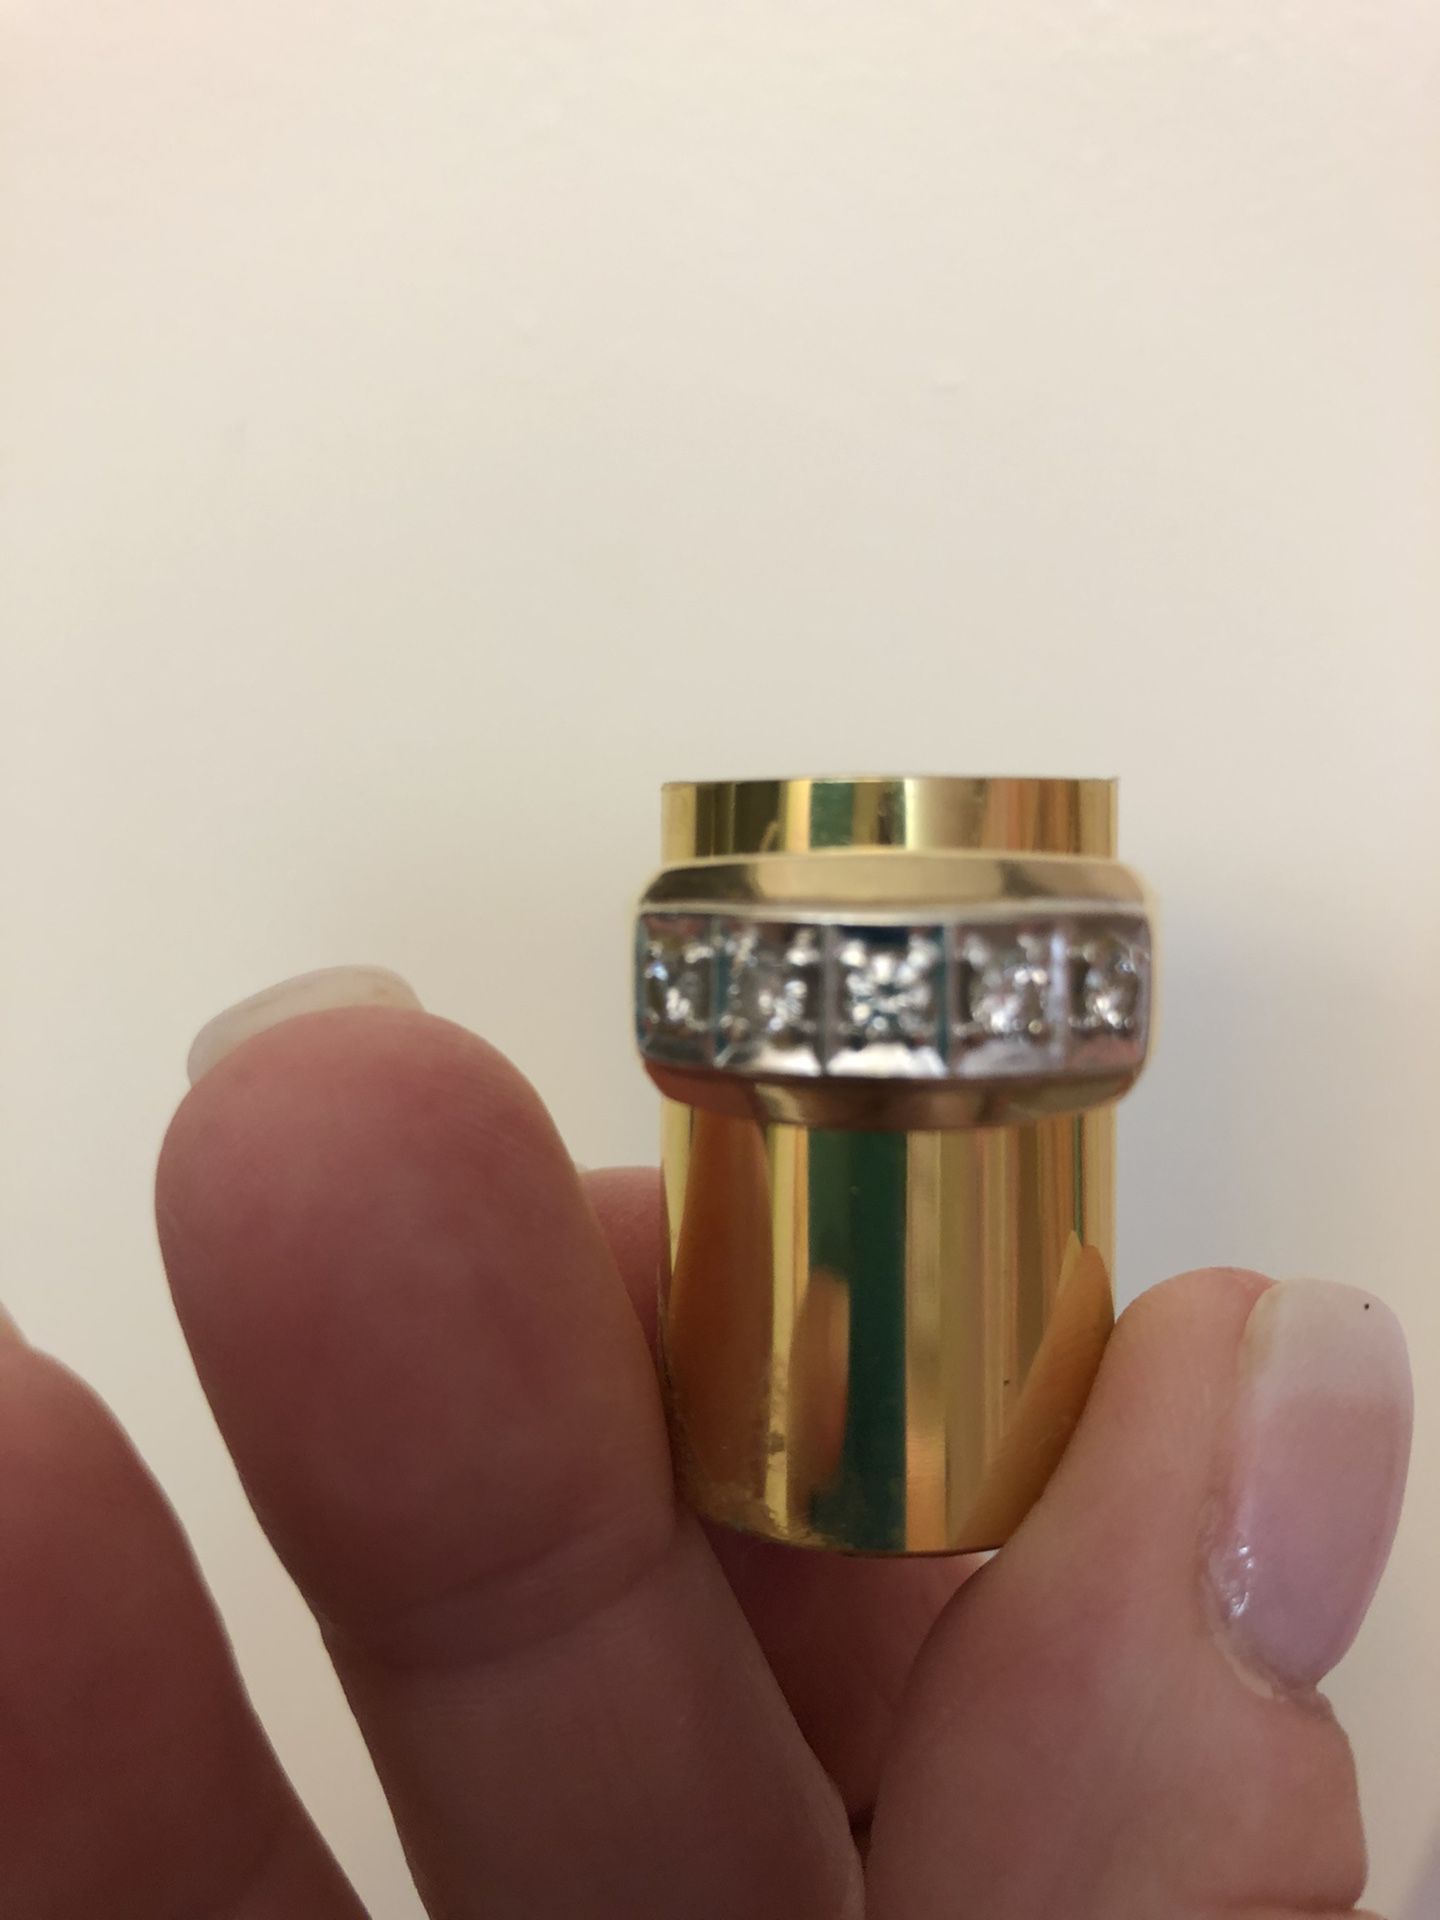 Men’s wedding ring